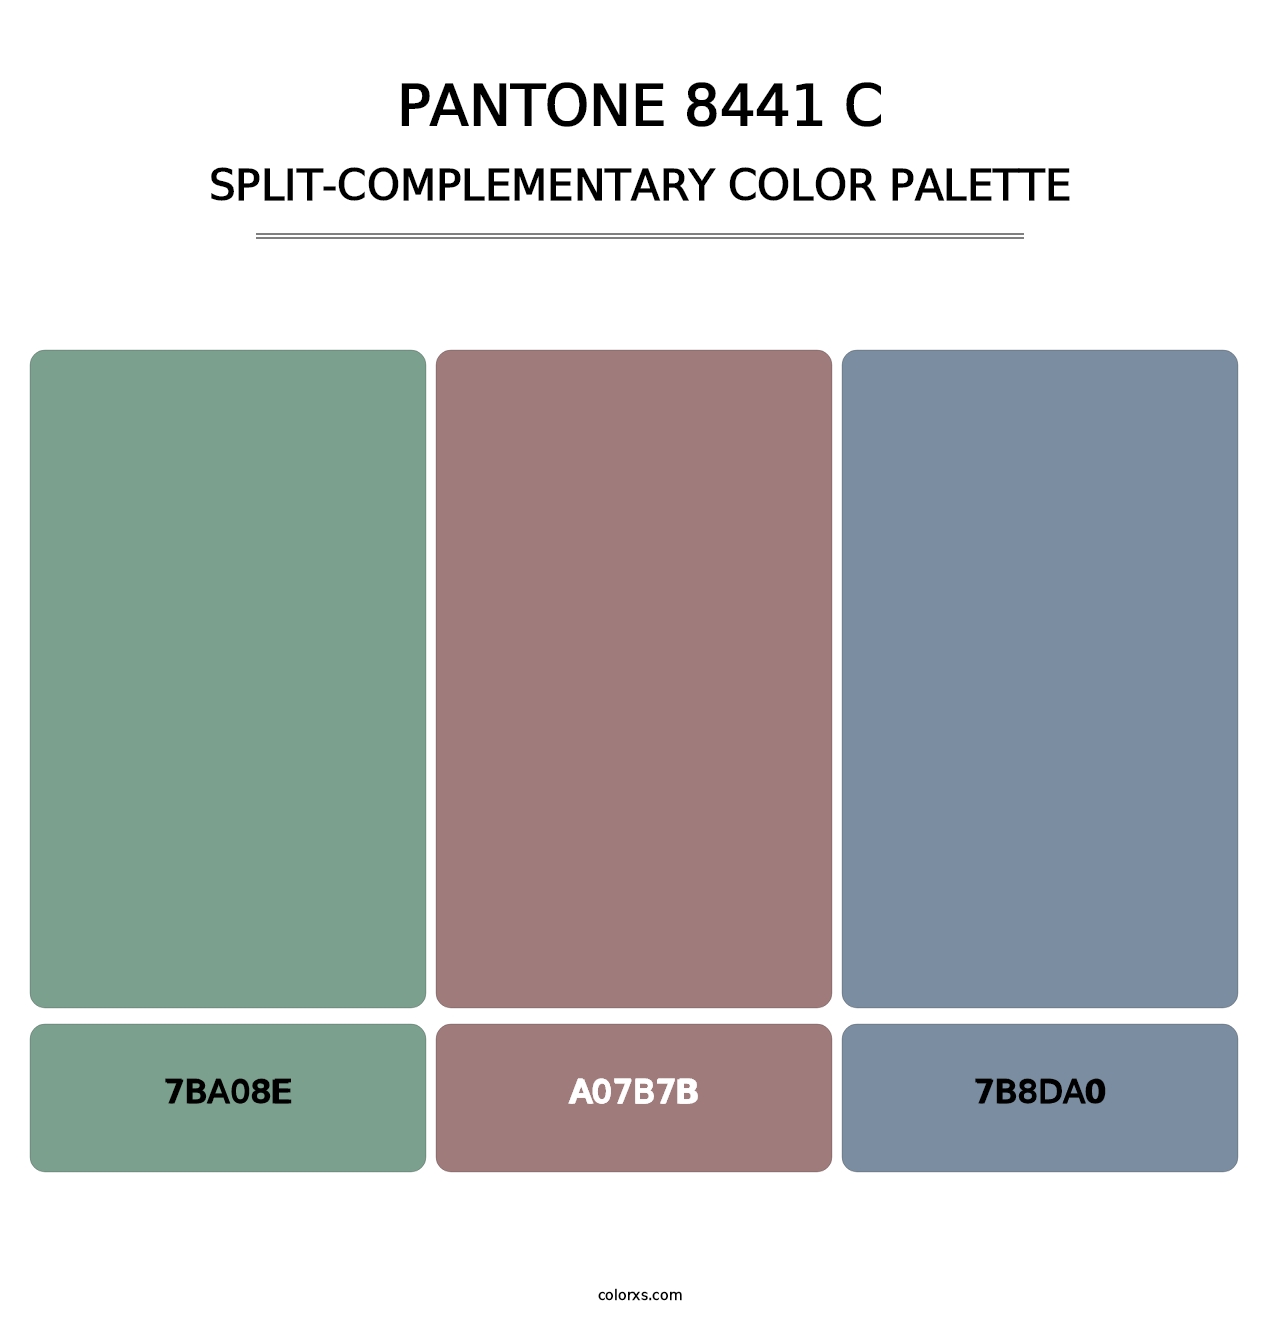 PANTONE 8441 C - Split-Complementary Color Palette